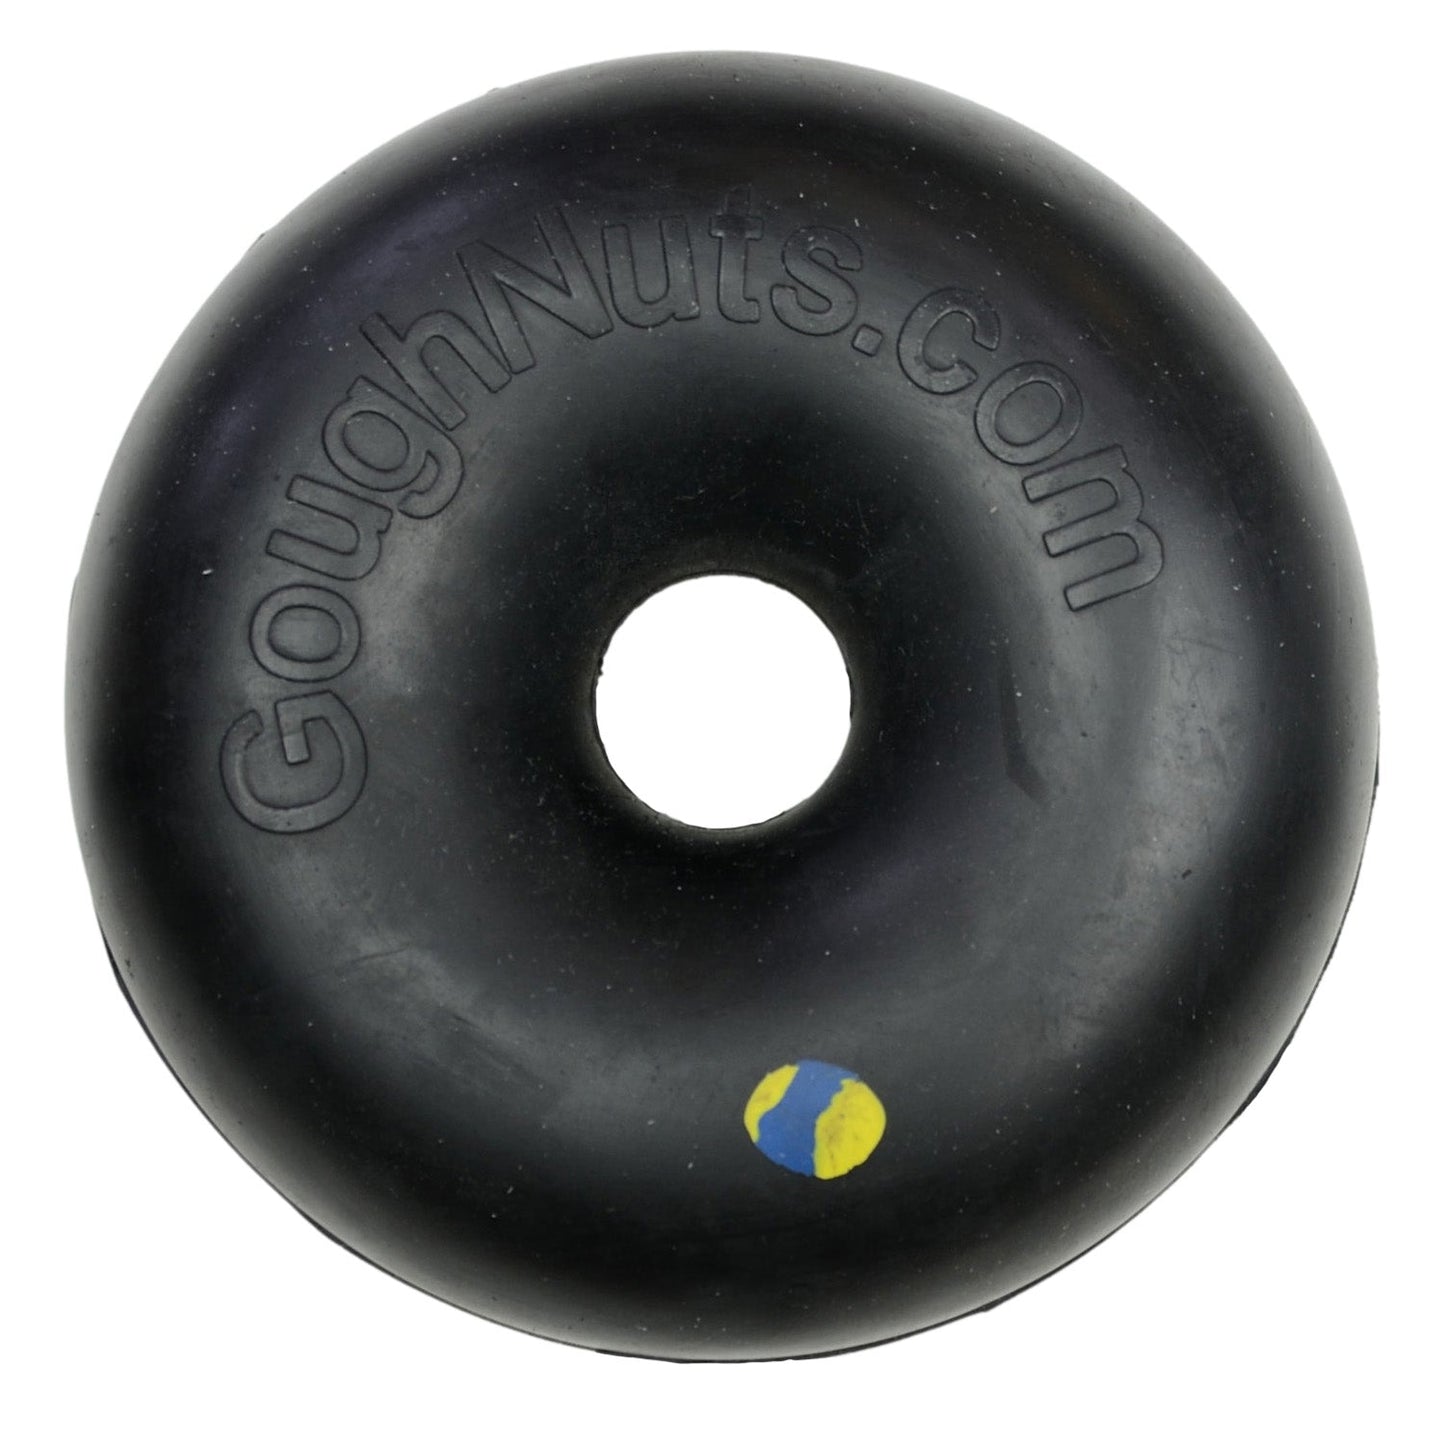 Goughnuts Heavy Duty Black Ring